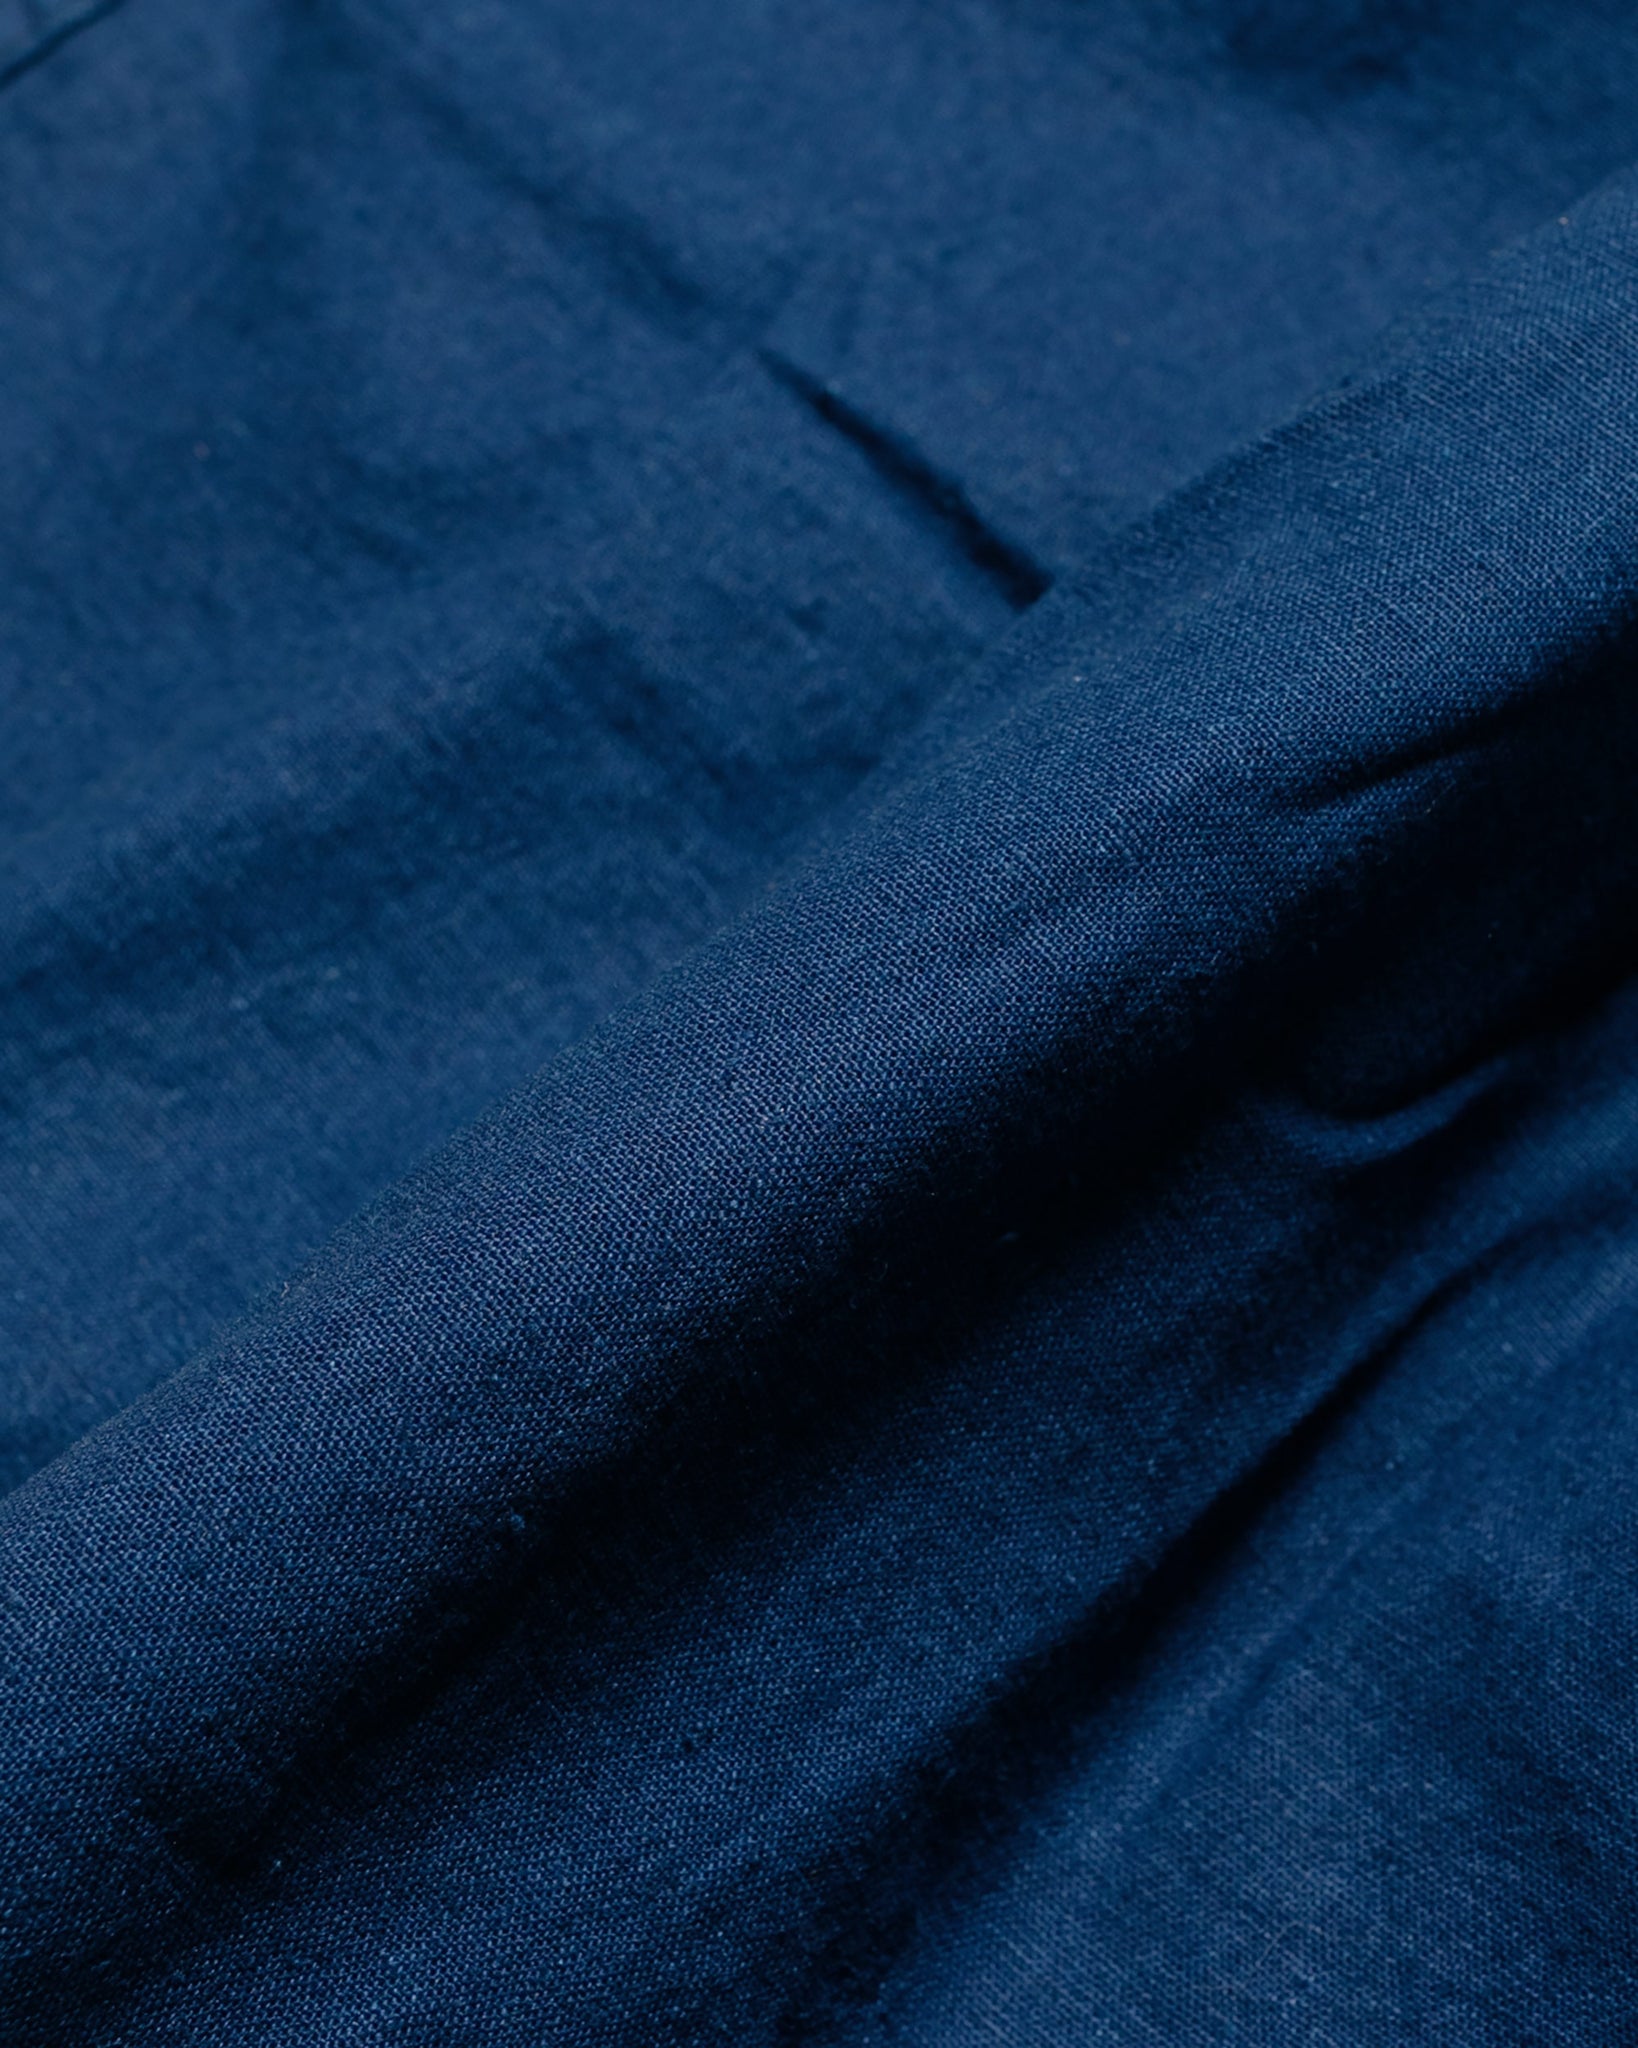 Post O'Alls E-Z Travail Shorts Cotton/Linen Sheeting Indigo fabric